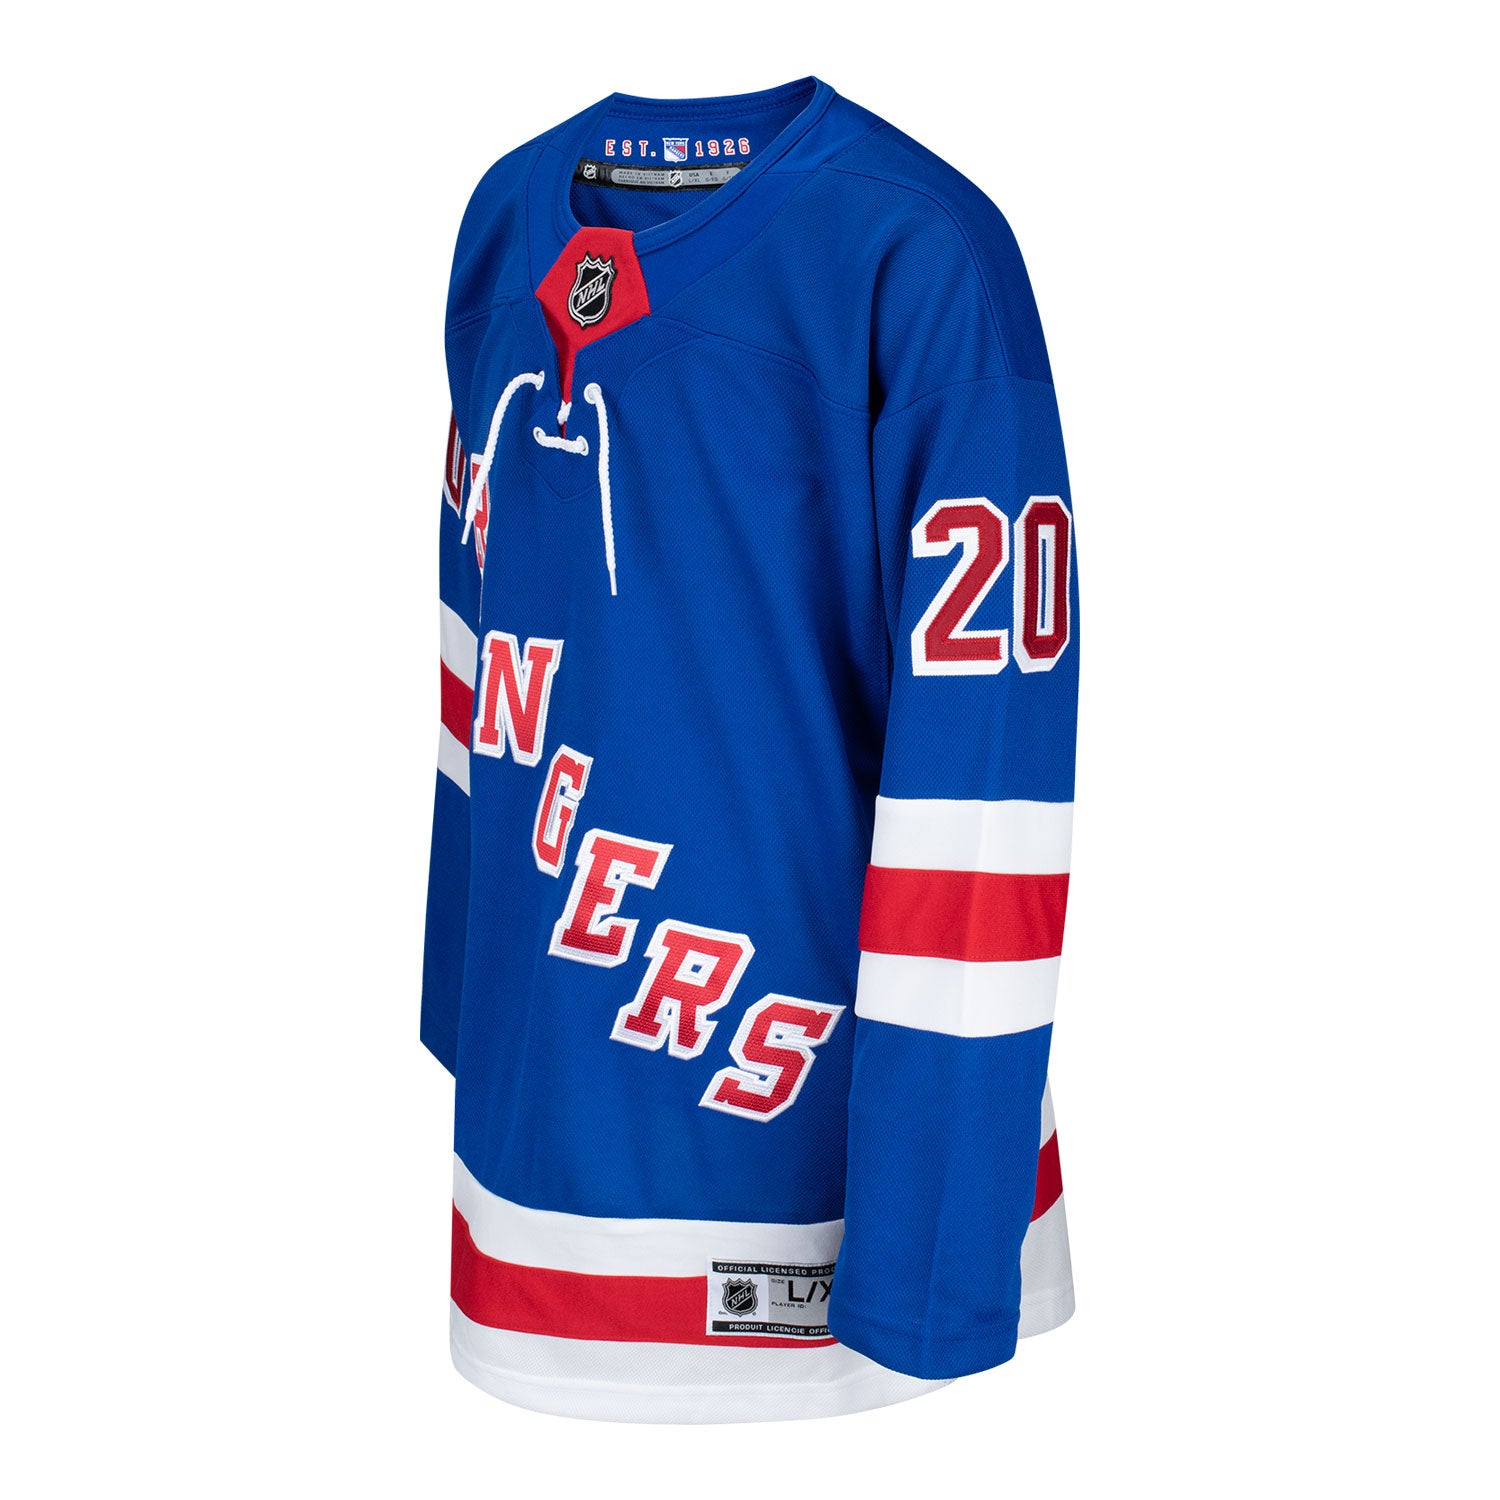 Chris Kreider NHL Jerseys, NHL Hockey Jerseys, Authentic NHL